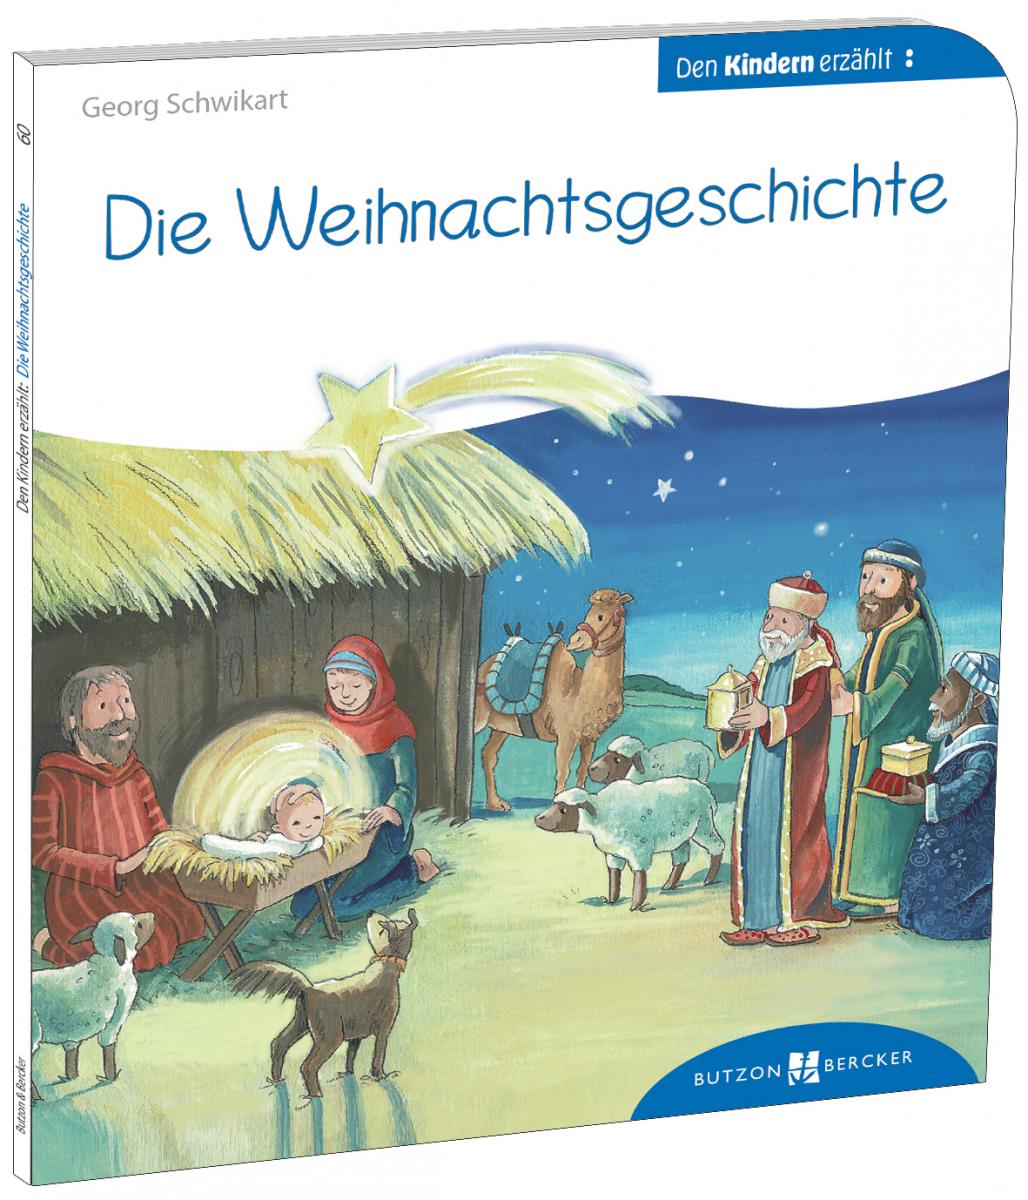 Kinderbuch - Die Weihnachtsgeschichte den Kindern erzählt